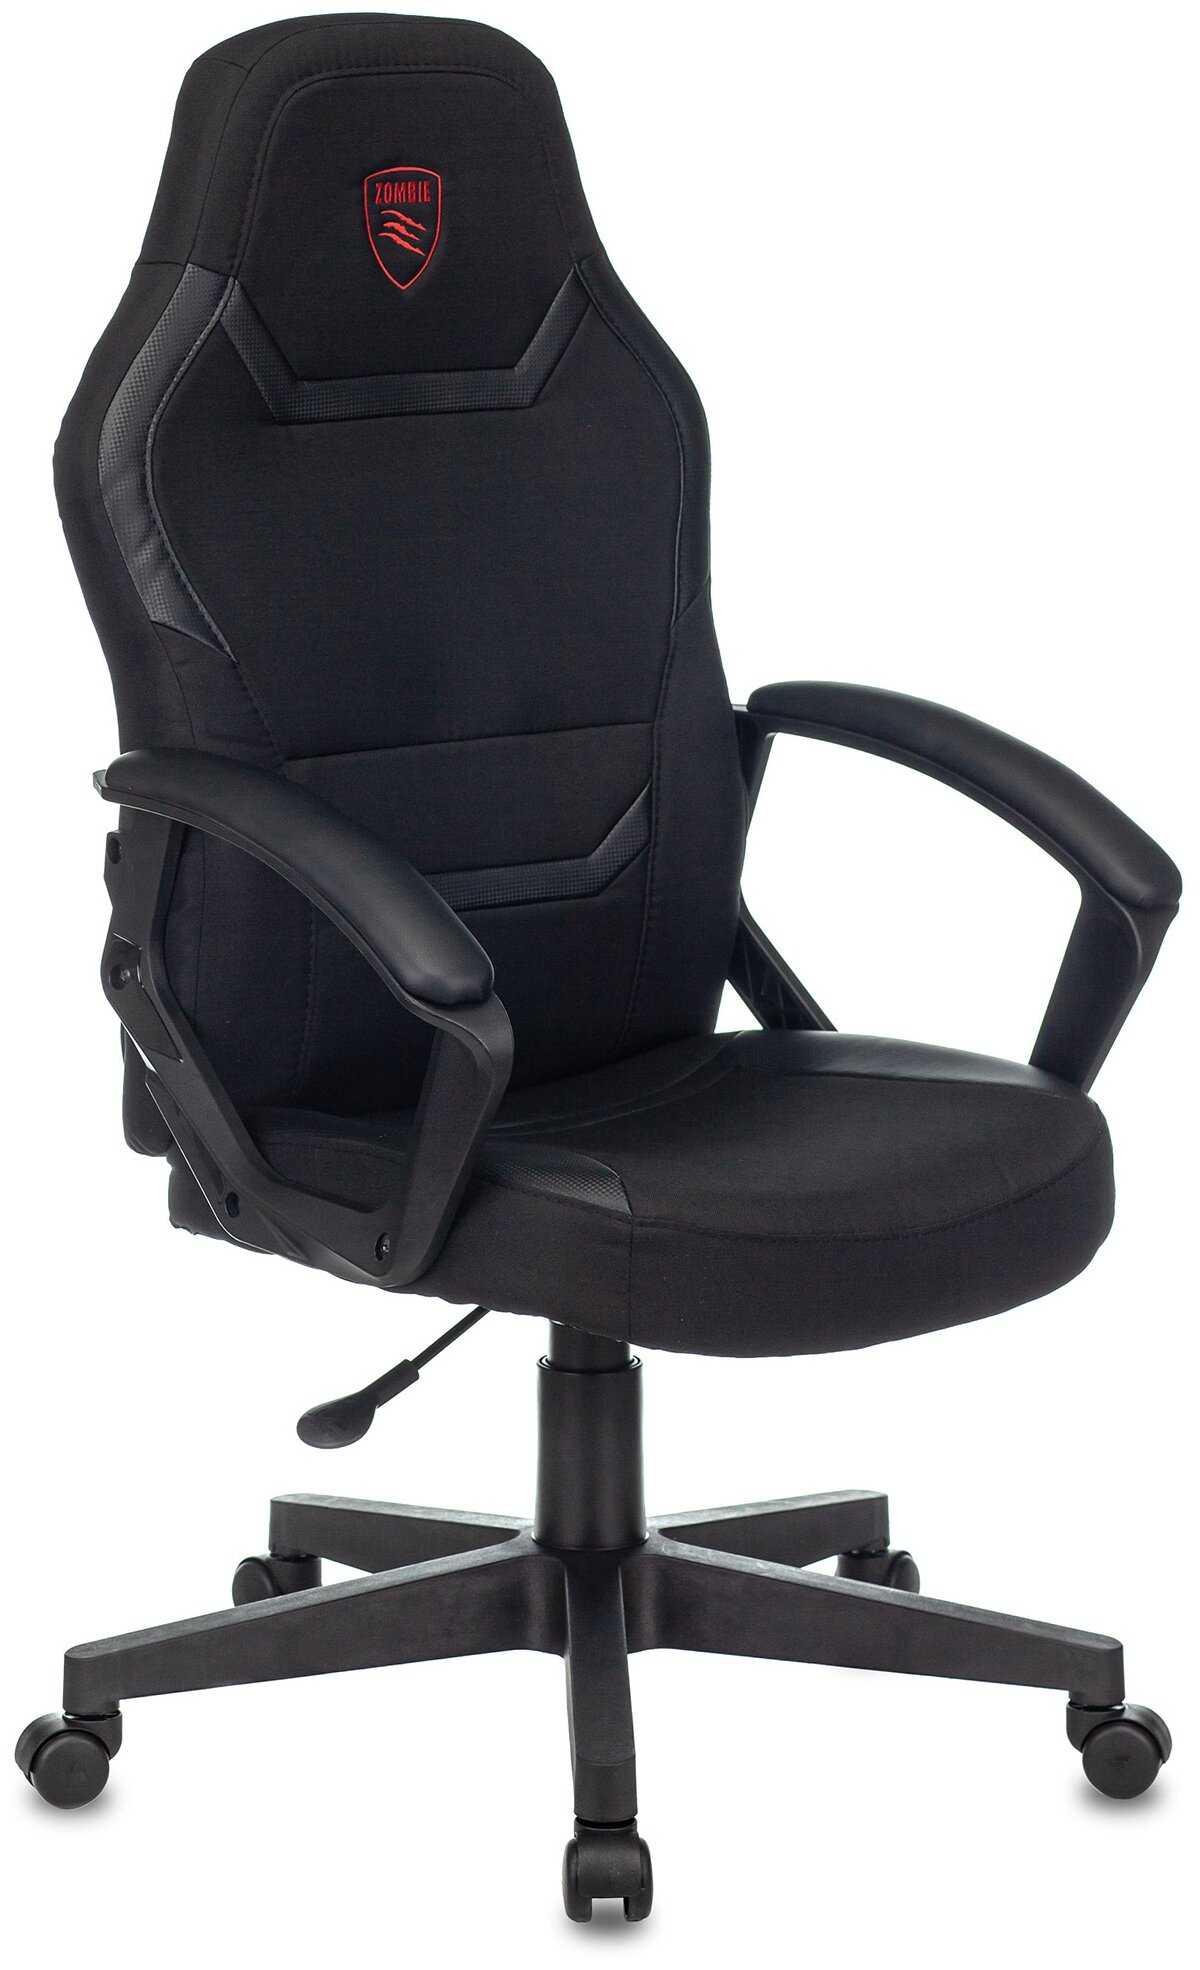 Компьютерное кресло Zombie 10 игровое, обивка: искусственная кожа/текстиль, цвет: черный